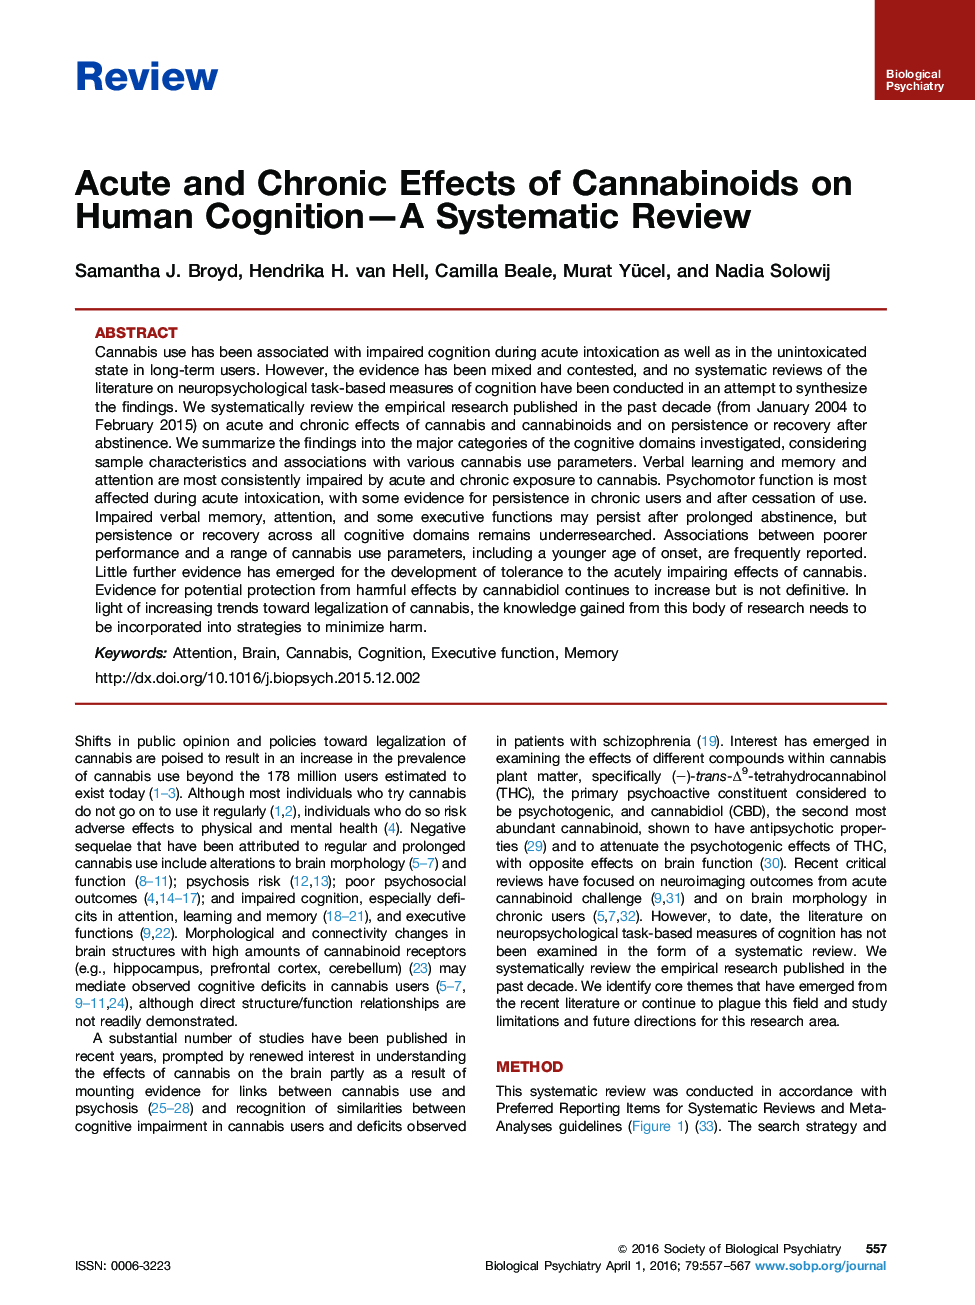 اثرات حاد و مزمن کانابینوئید بر شناخت انسان - مرور یک سیستماتیک 